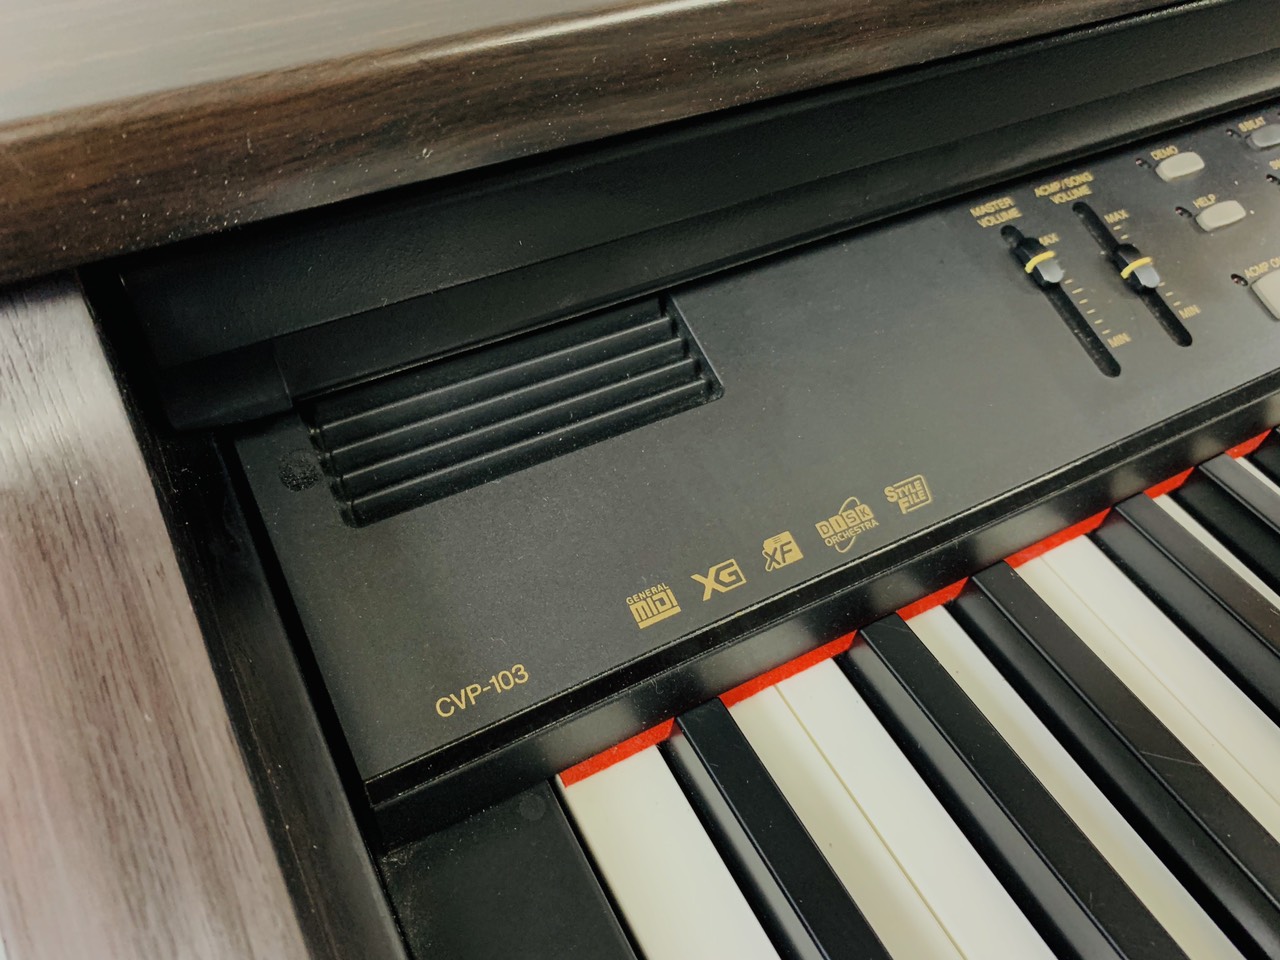 báo giá piano điện Yamaha